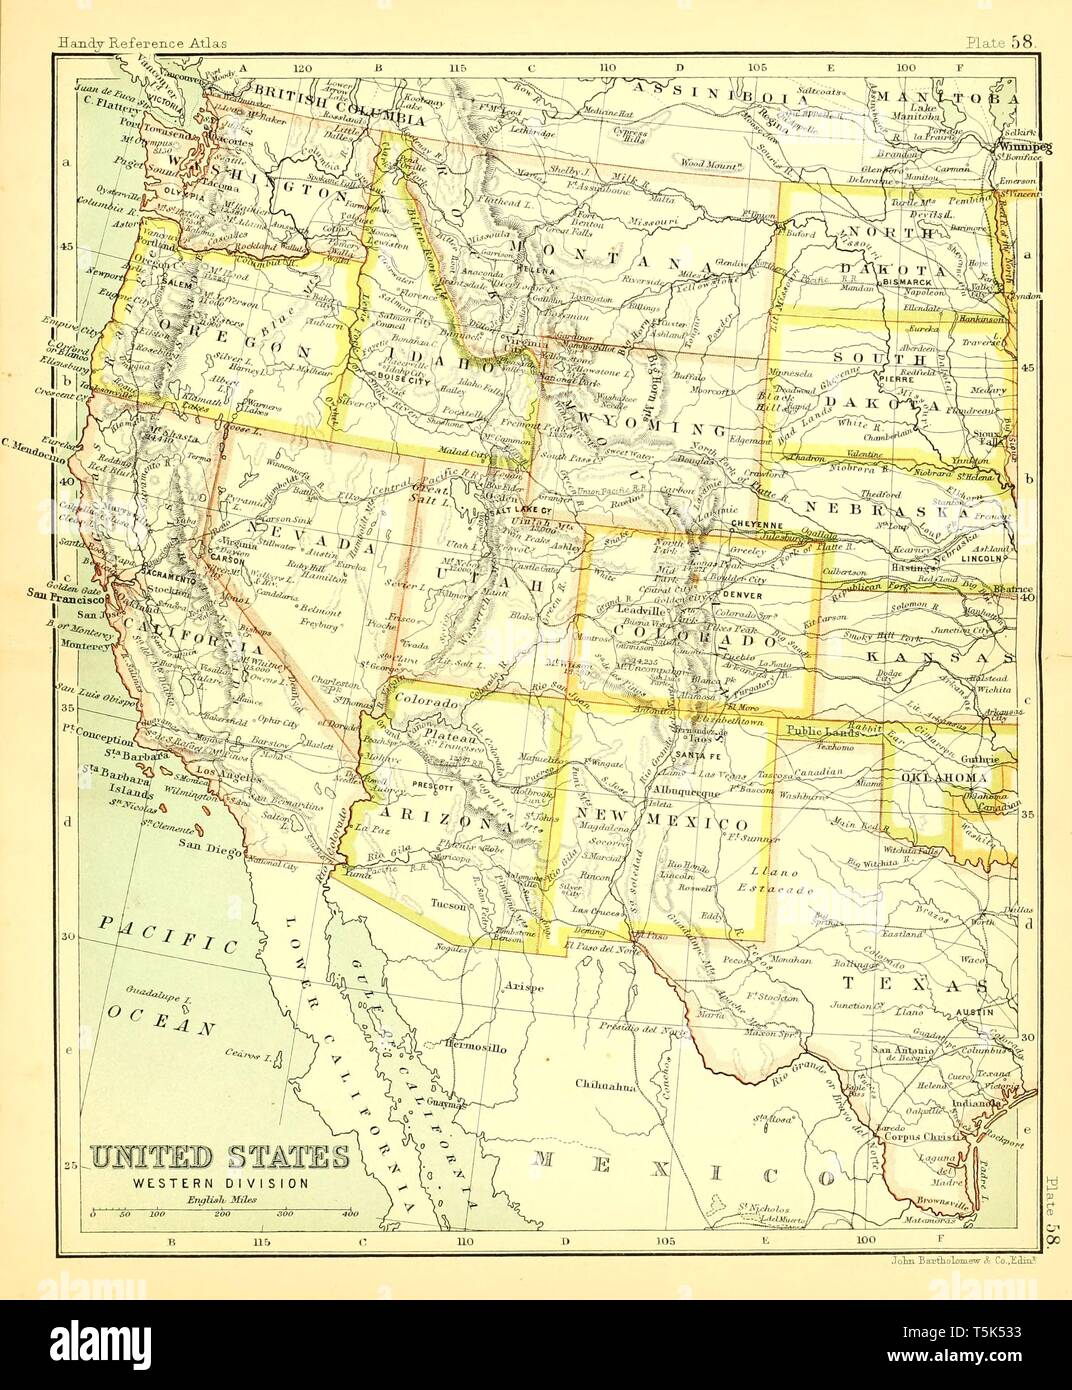 Vintage hermoso mapa dibujado a mano ilustraciones de EE.UU. al oeste de libro viejo. Puede ser utilizado como elemento decorativo o póster para el diseño de interiores. Foto de stock